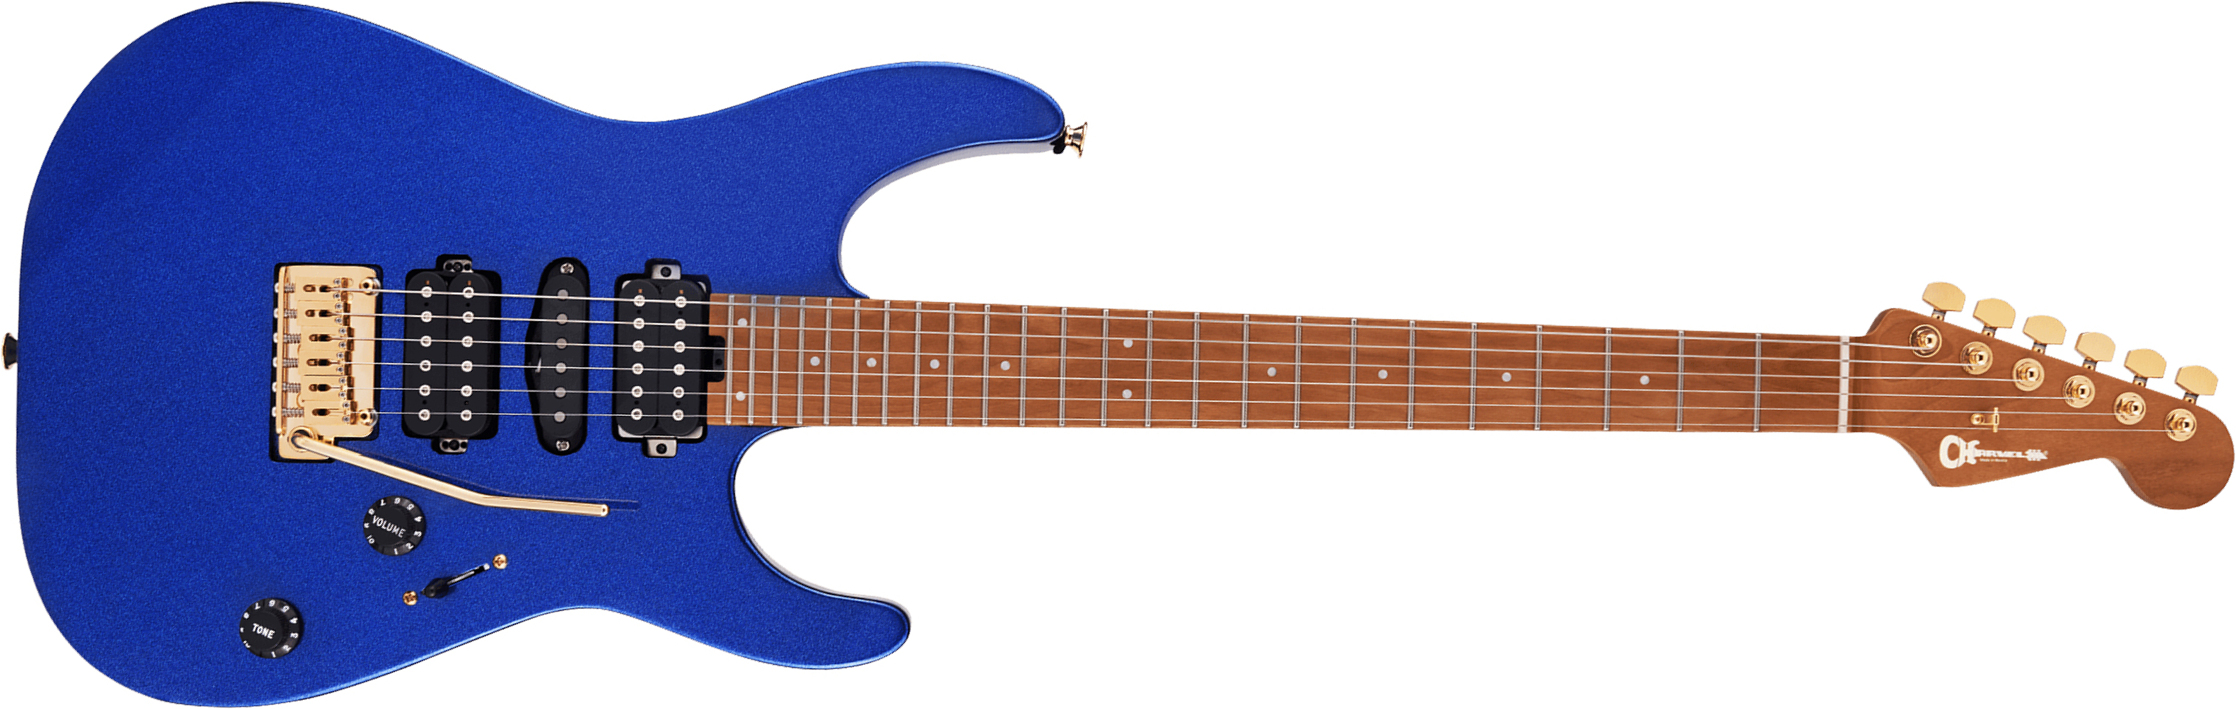 Charvel Dinky Dk24 Hsh 2pt Cm Pro-mod Seymour Duncan Trem Mn - Mystic Blue - Guitarra eléctrica con forma de str. - Main picture